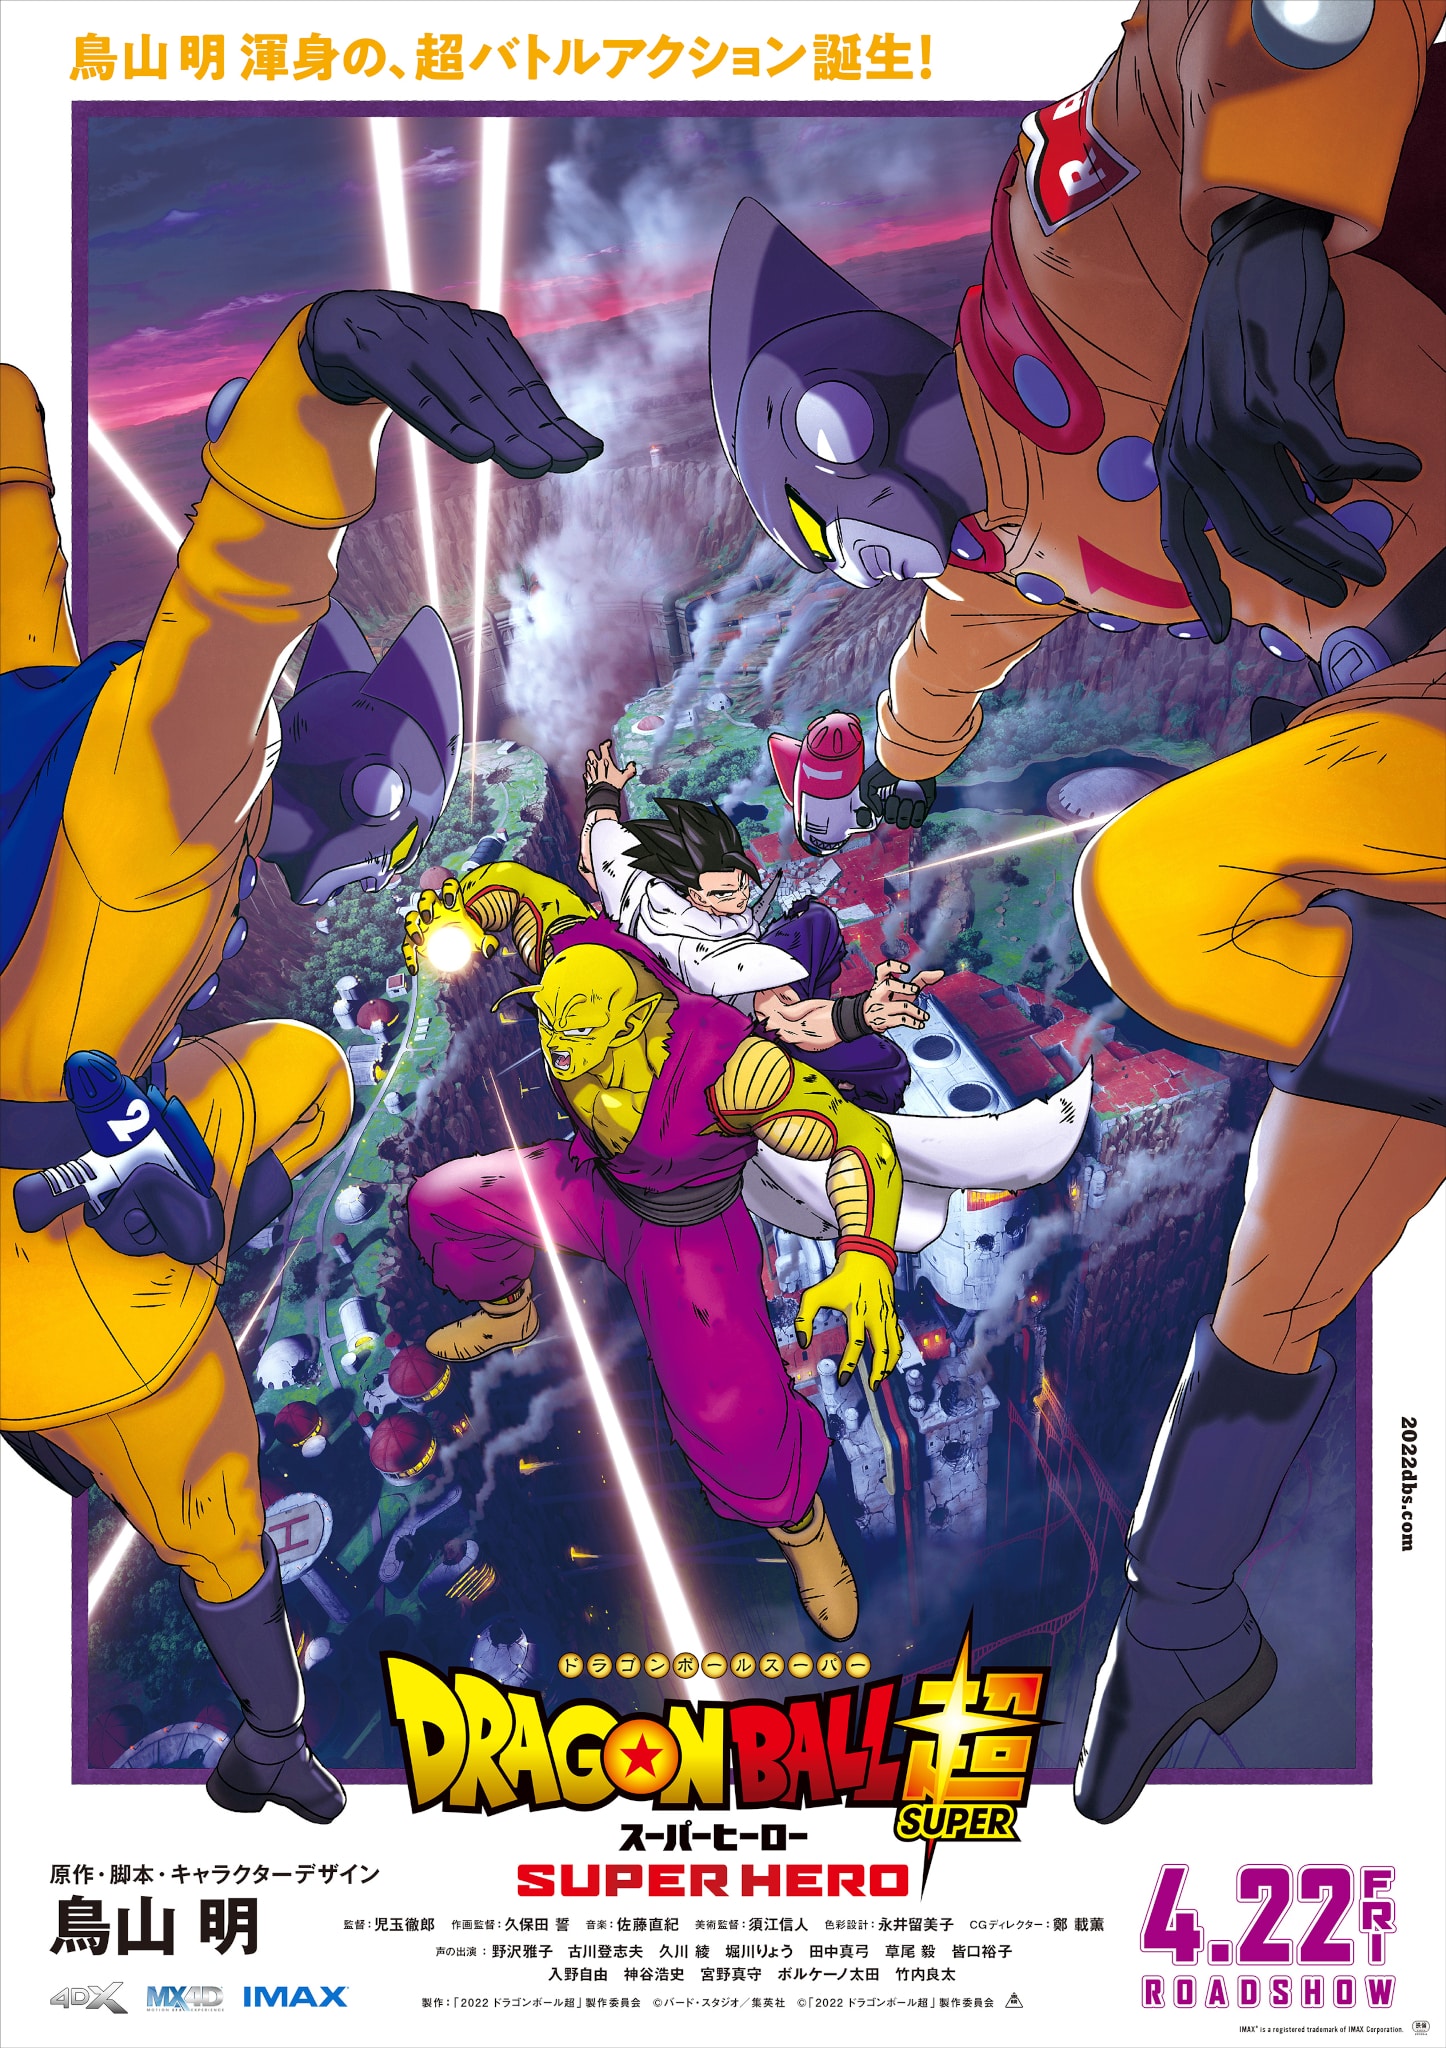 Troisième visuel pour le film Dragon Ball Super : SUPER HERO